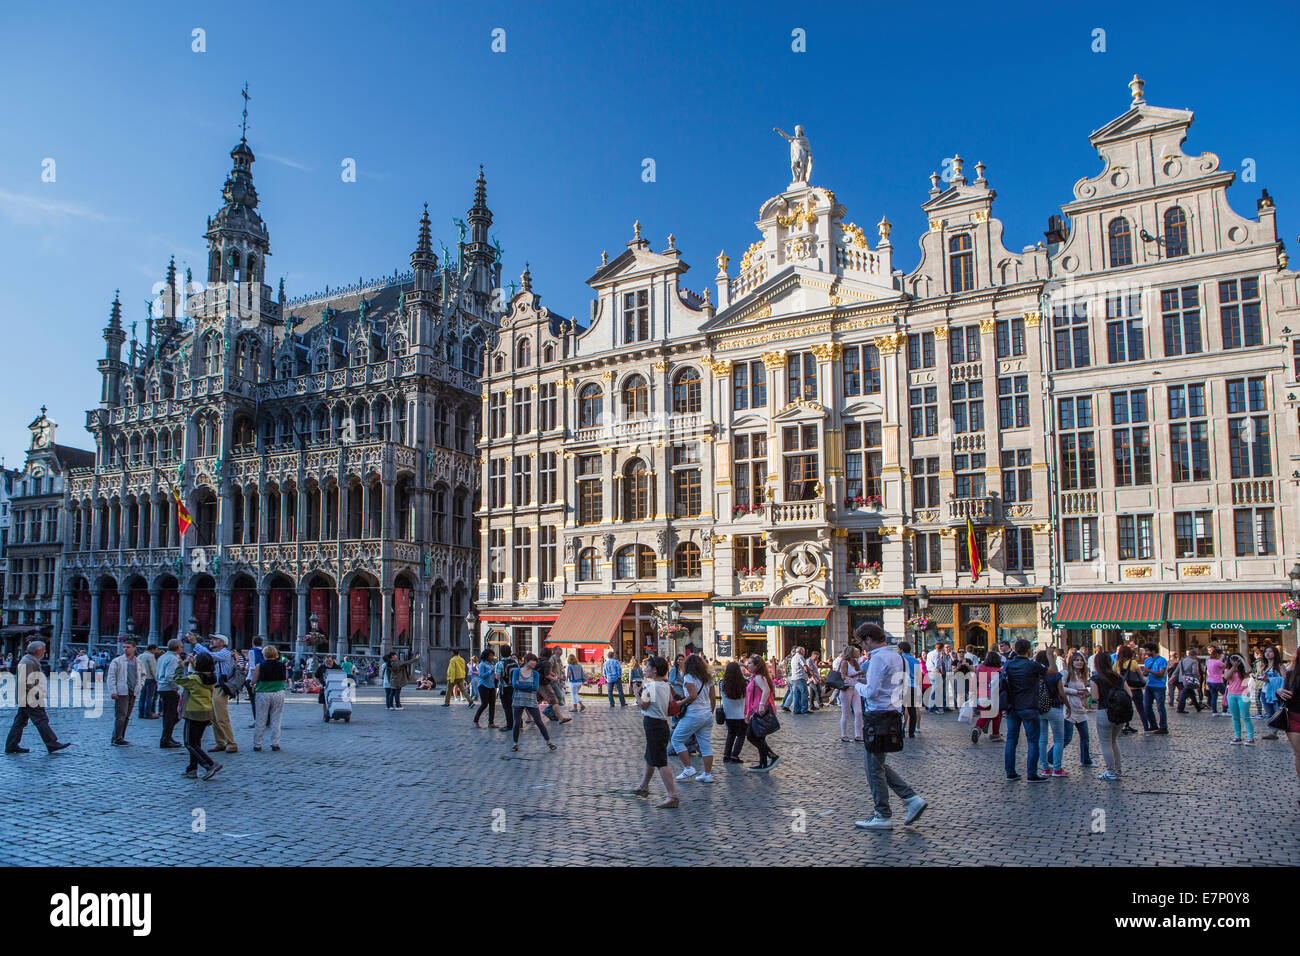 Bélgica, Europa, Bruselas, Grand Place, patrimonio de la humanidad, la cafetería, la arquitectura, la ciudad famosa, historia, skyline, cuadrado, turística, t Foto de stock